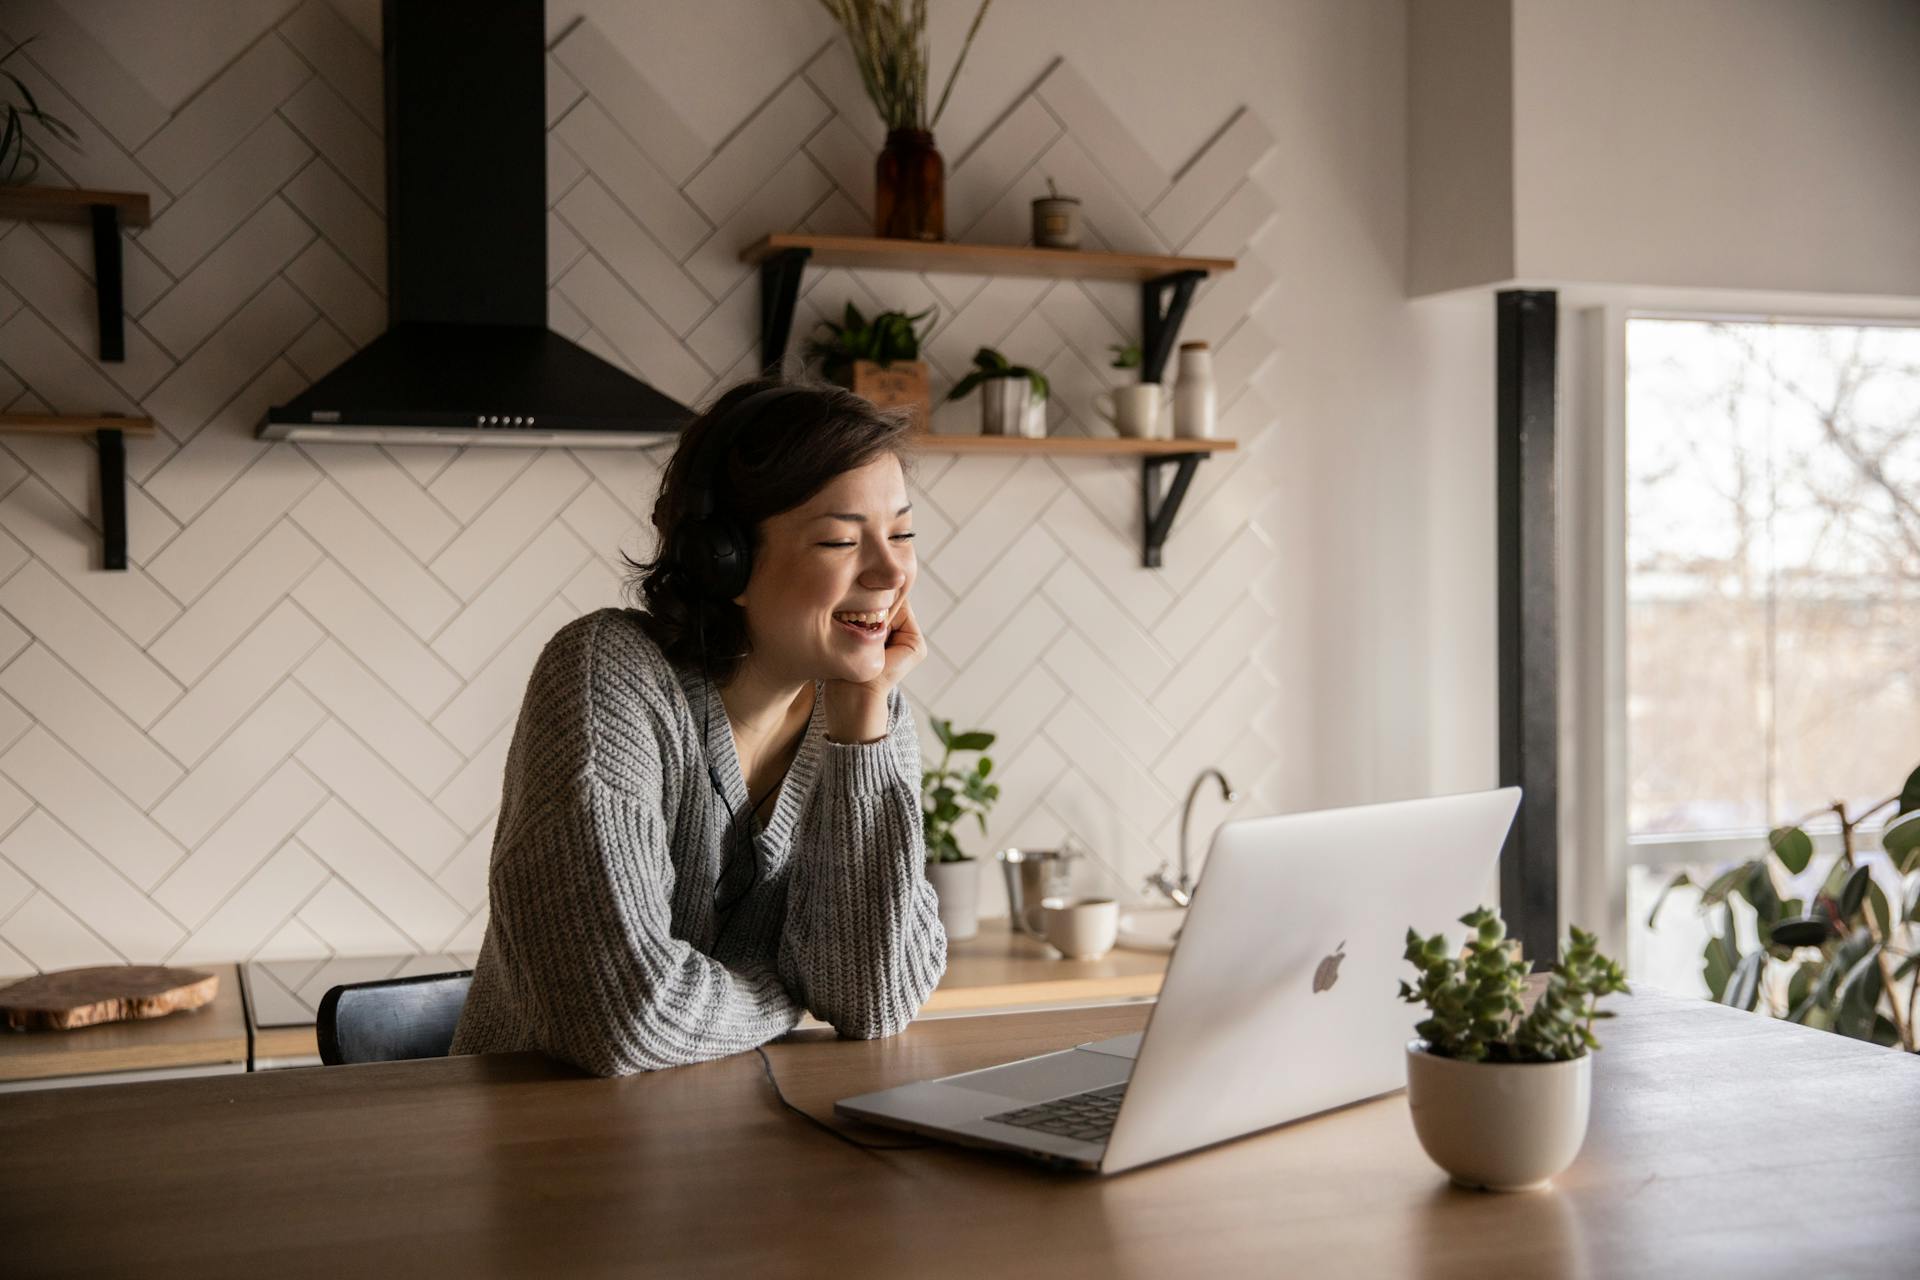 Una mujer sonriente hablando a través de un ordenador portátil mientras está sentada en la cocina | Fuente: Pexels